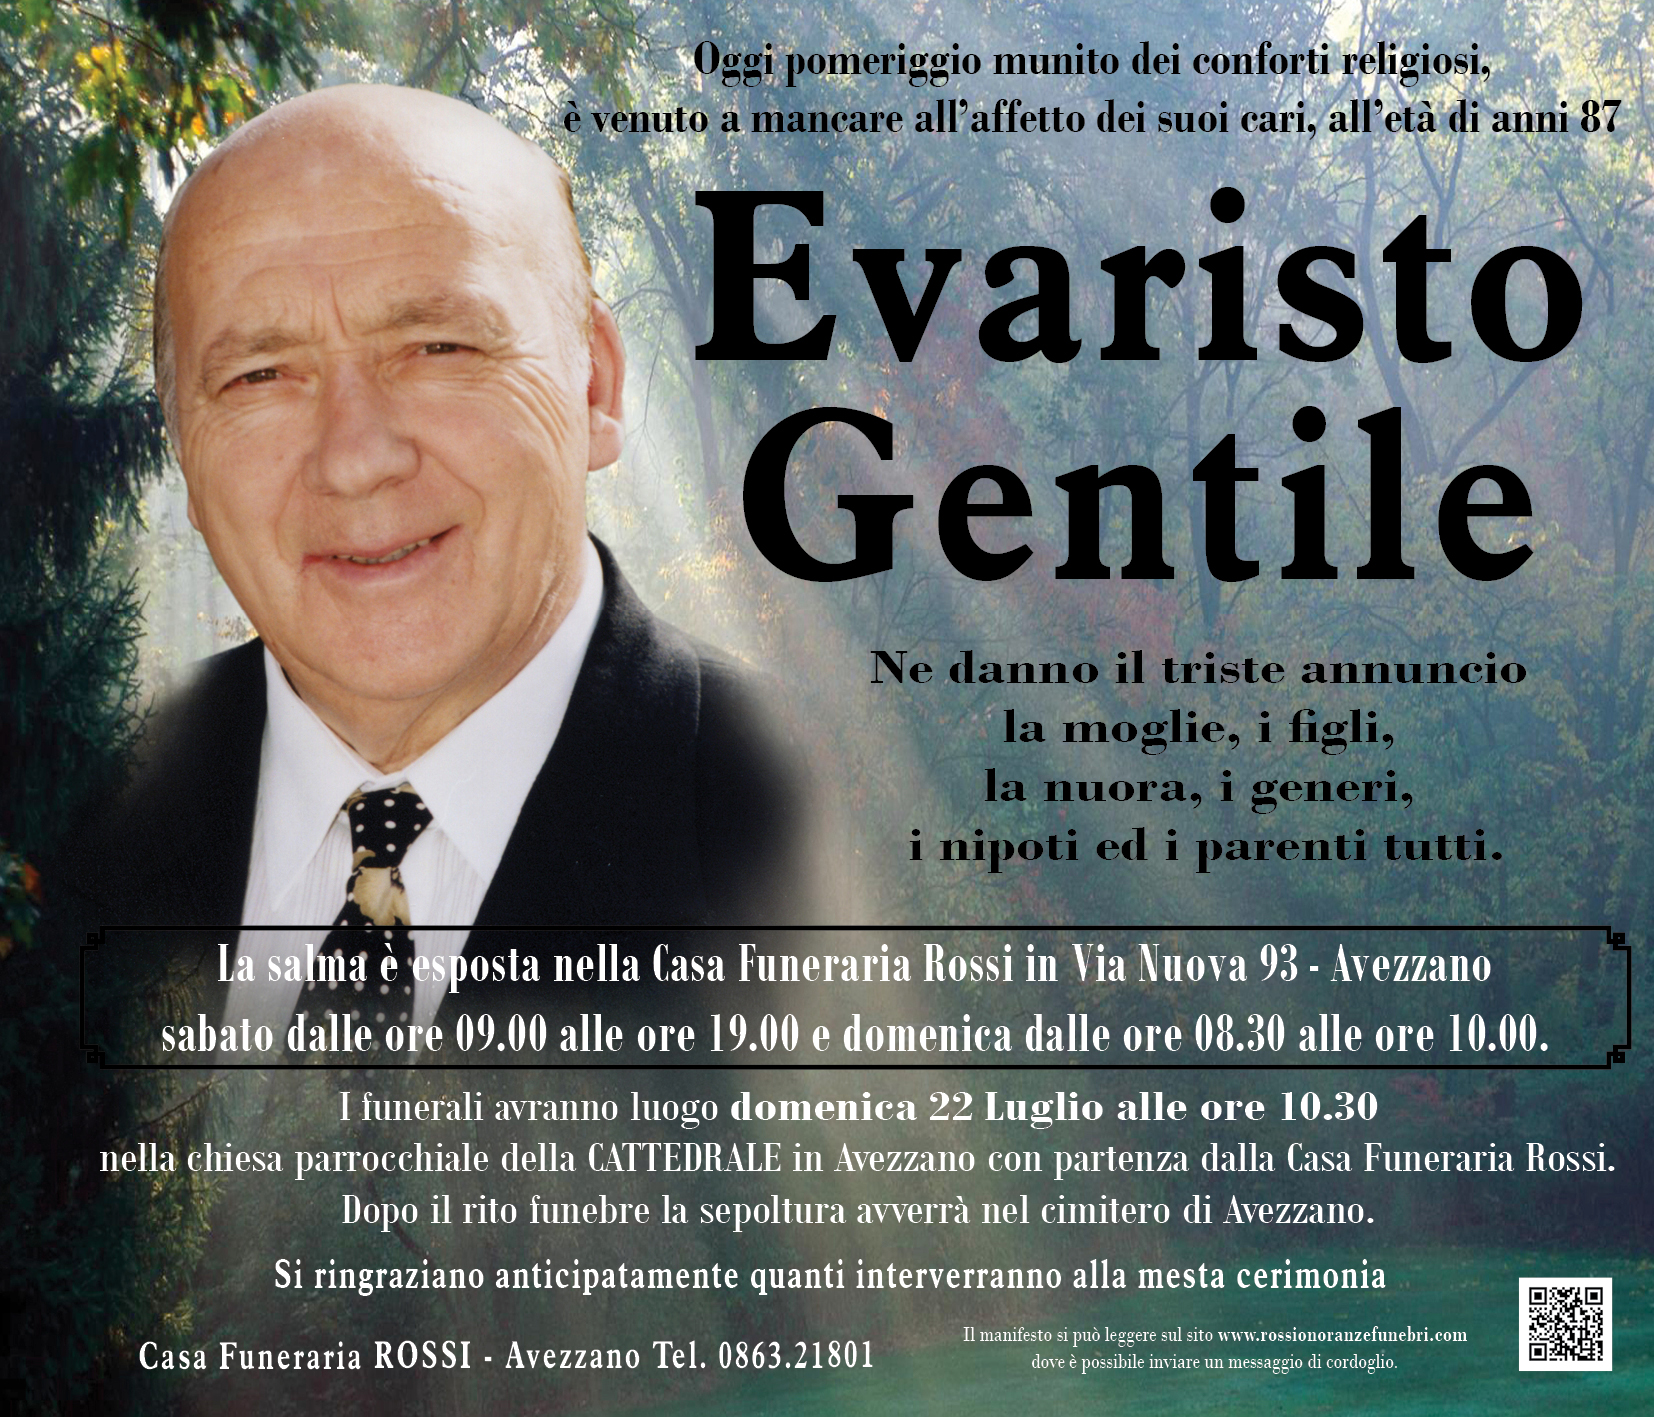 Evaristo Gentile